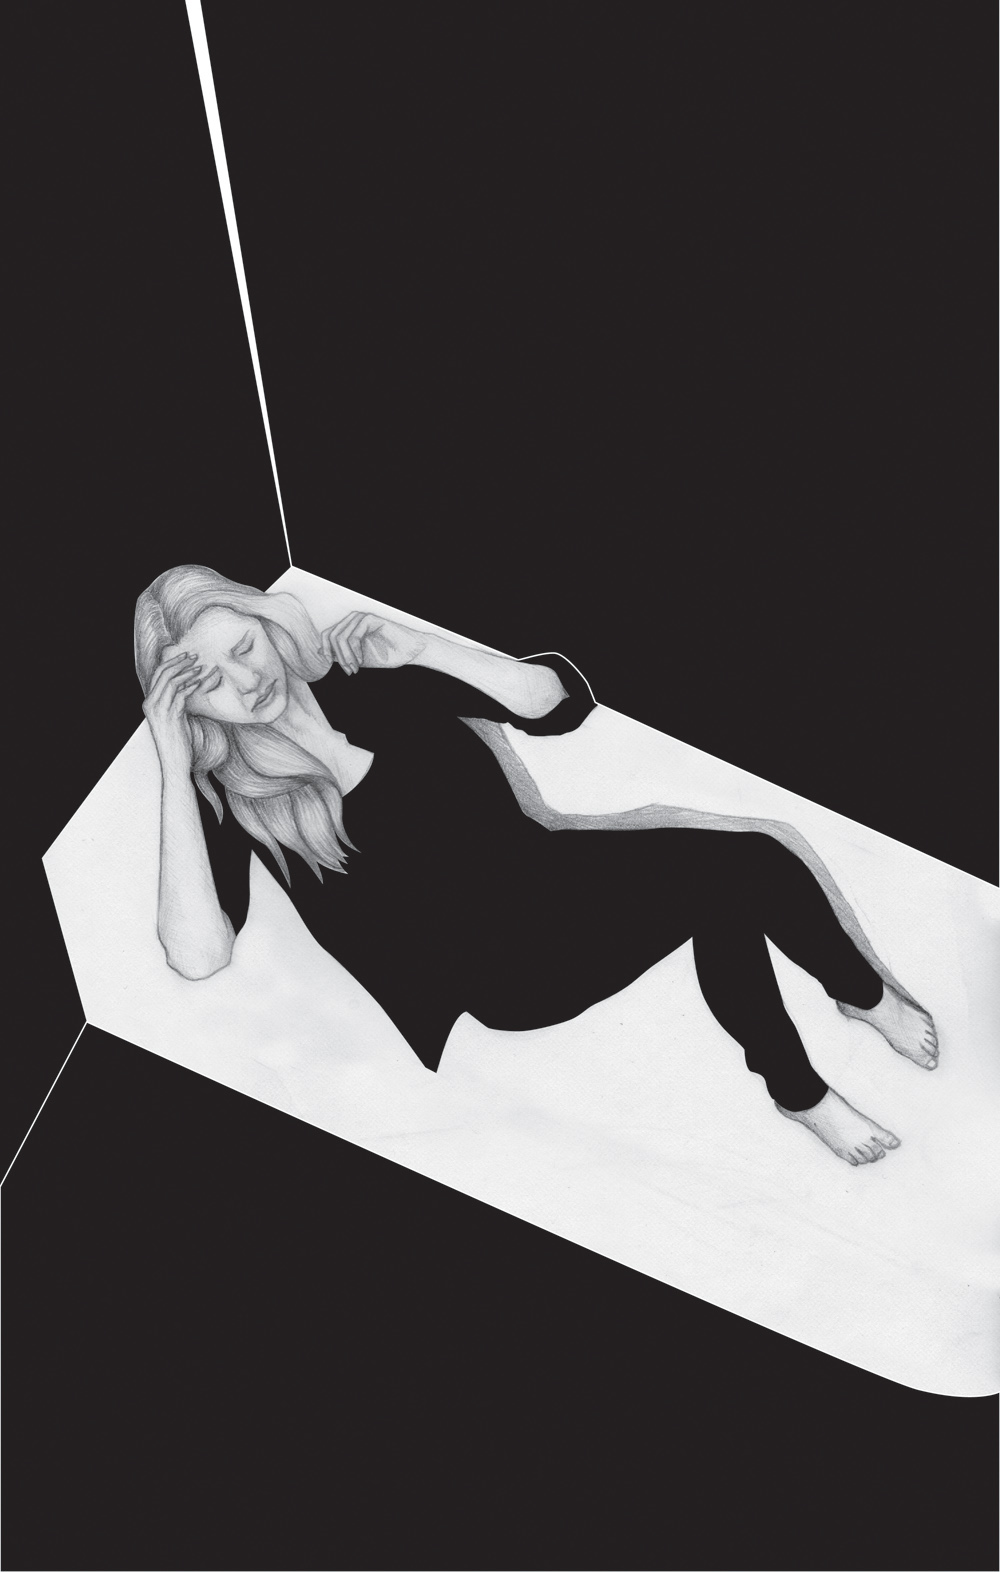 Lana Del Rey Triptych ultraviolence black and white graphite Fashion  Illustrator